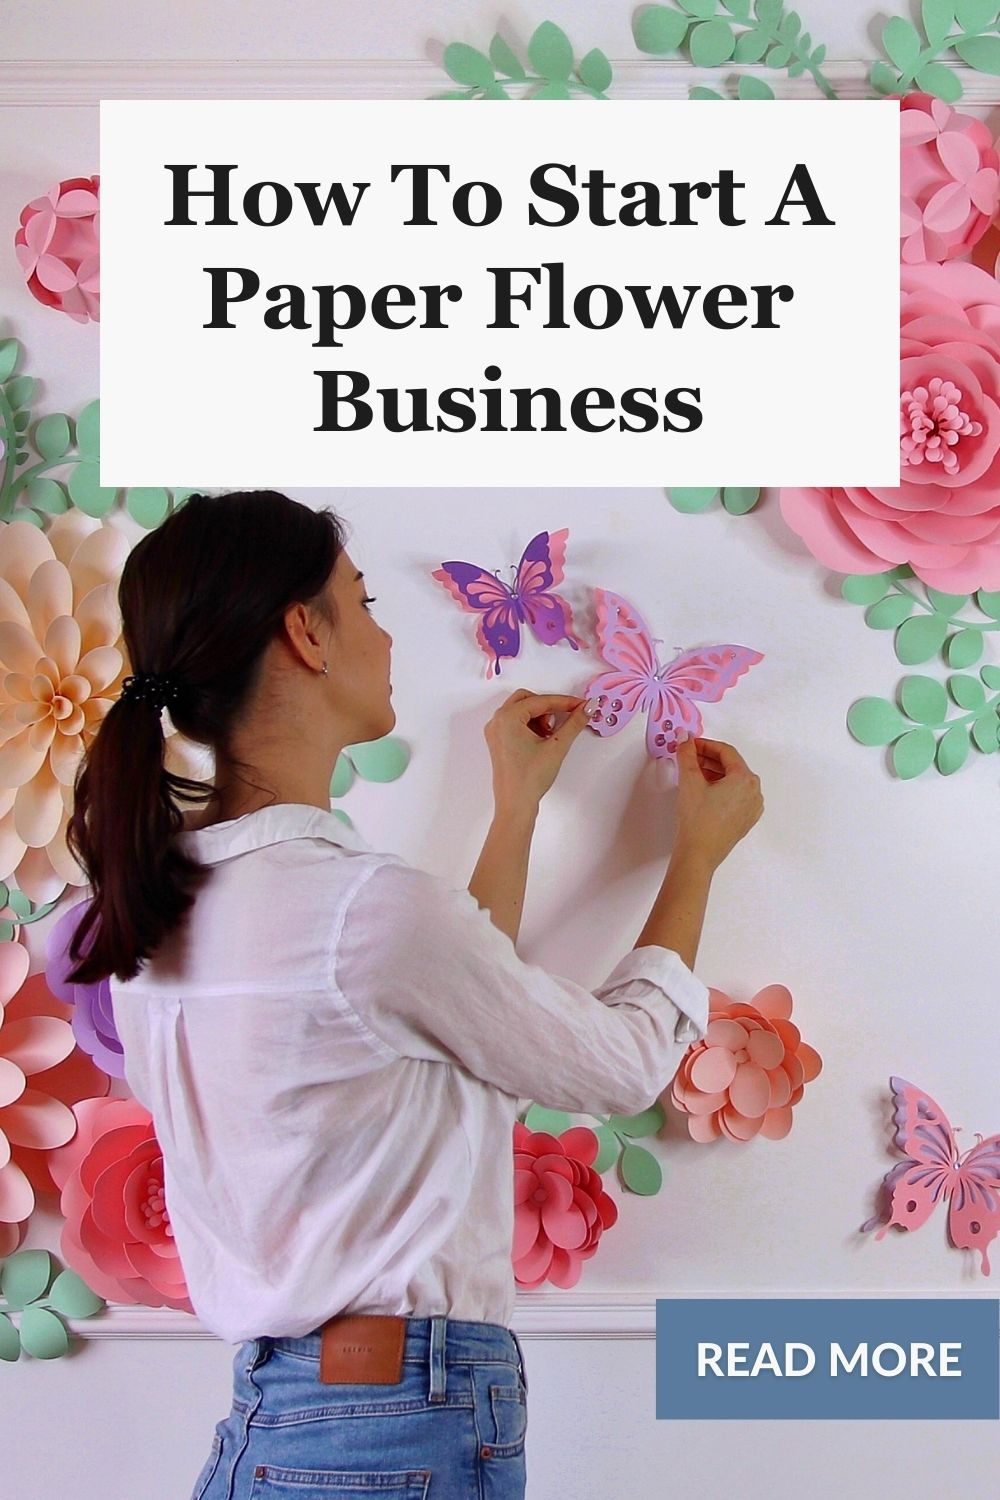 Paper Flower business website pin 2